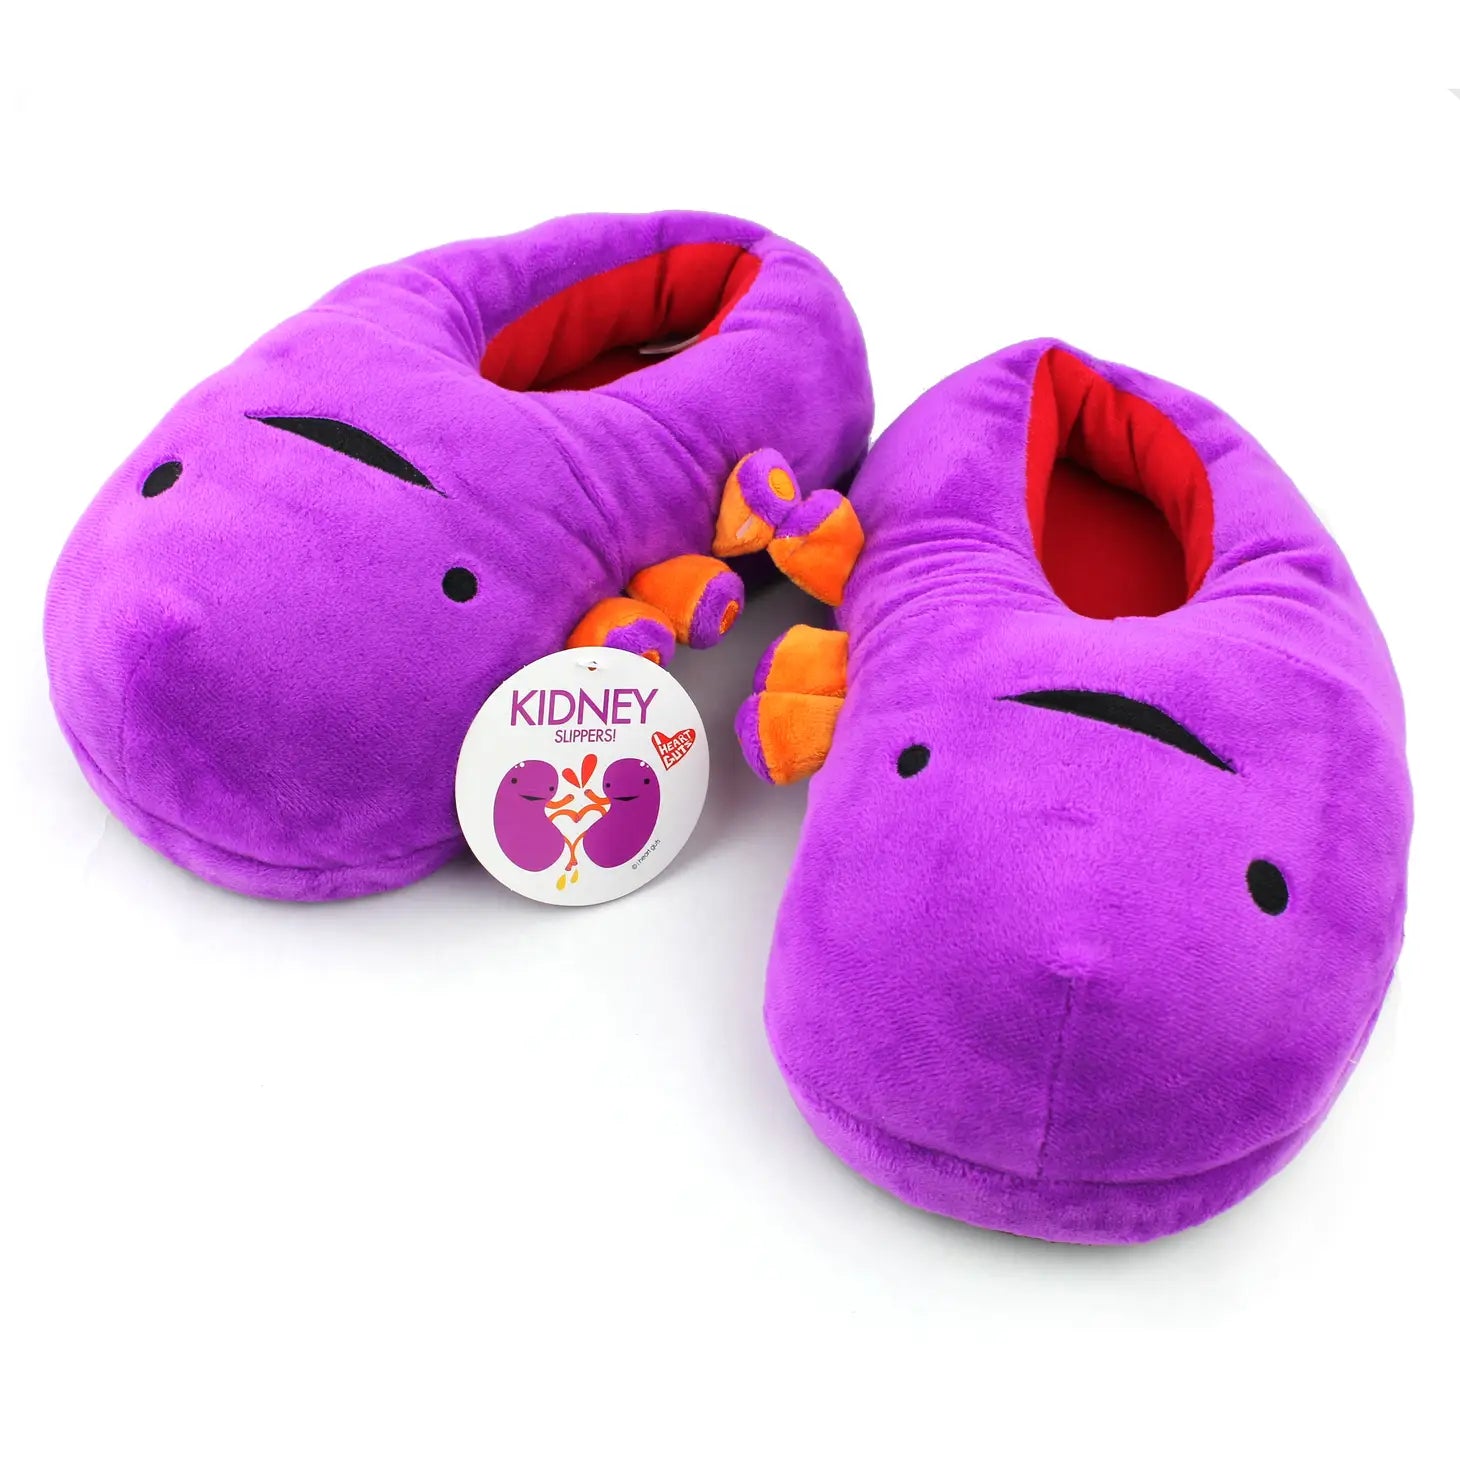 Kidney slippers (36-40)